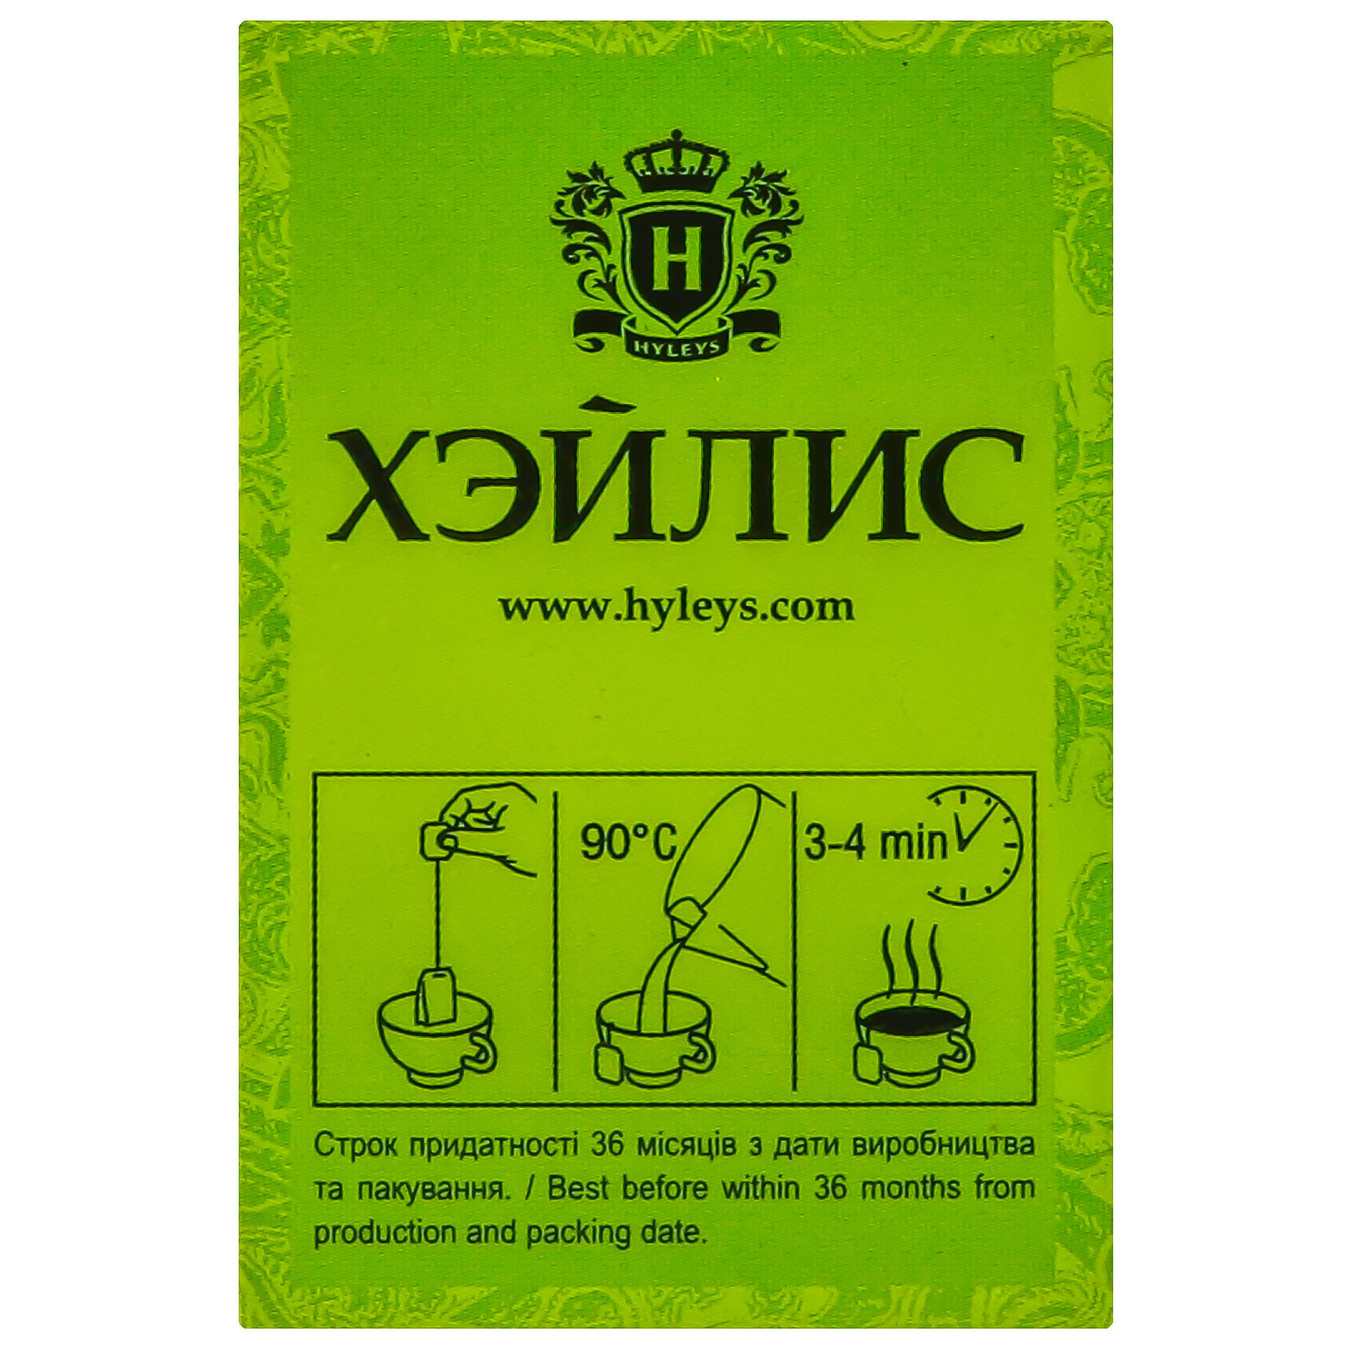 Hyleys green tea with sauce 20pcs x 1.5 g 9